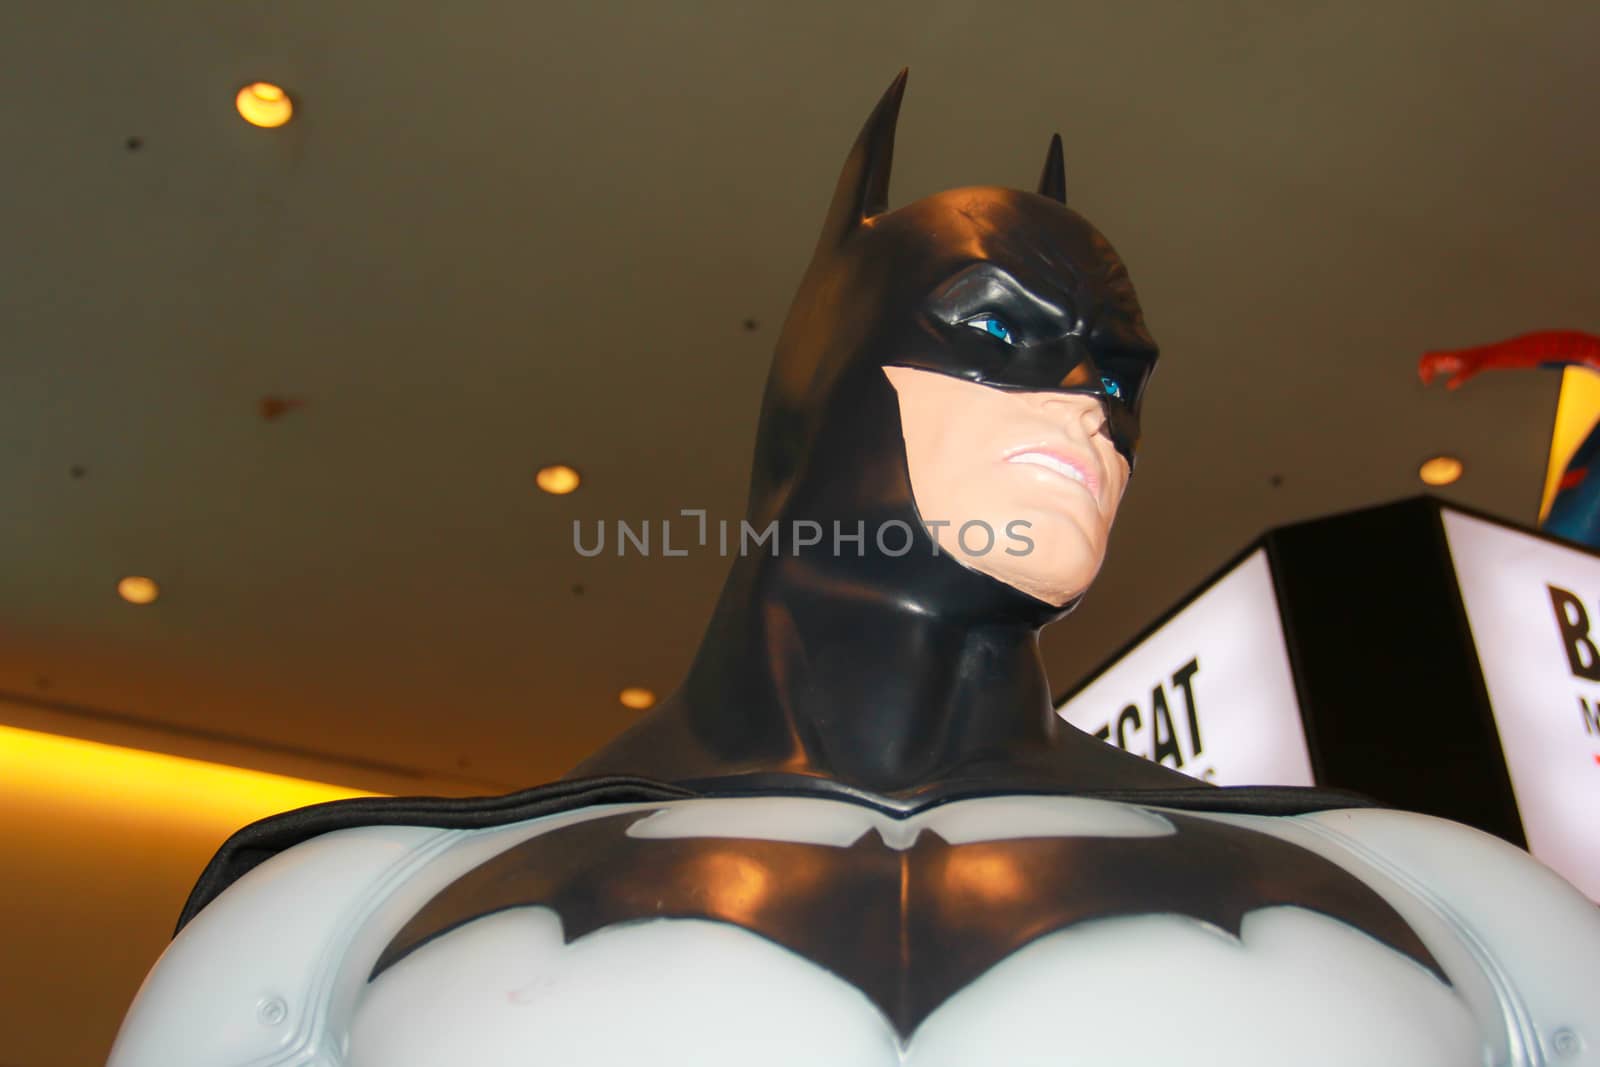 BANGKOK - MAY. 11: A Batman model in Thailand Comic Con 2014 on May 11, 2014 at Siam Paragon, Bangkok, Thailand.